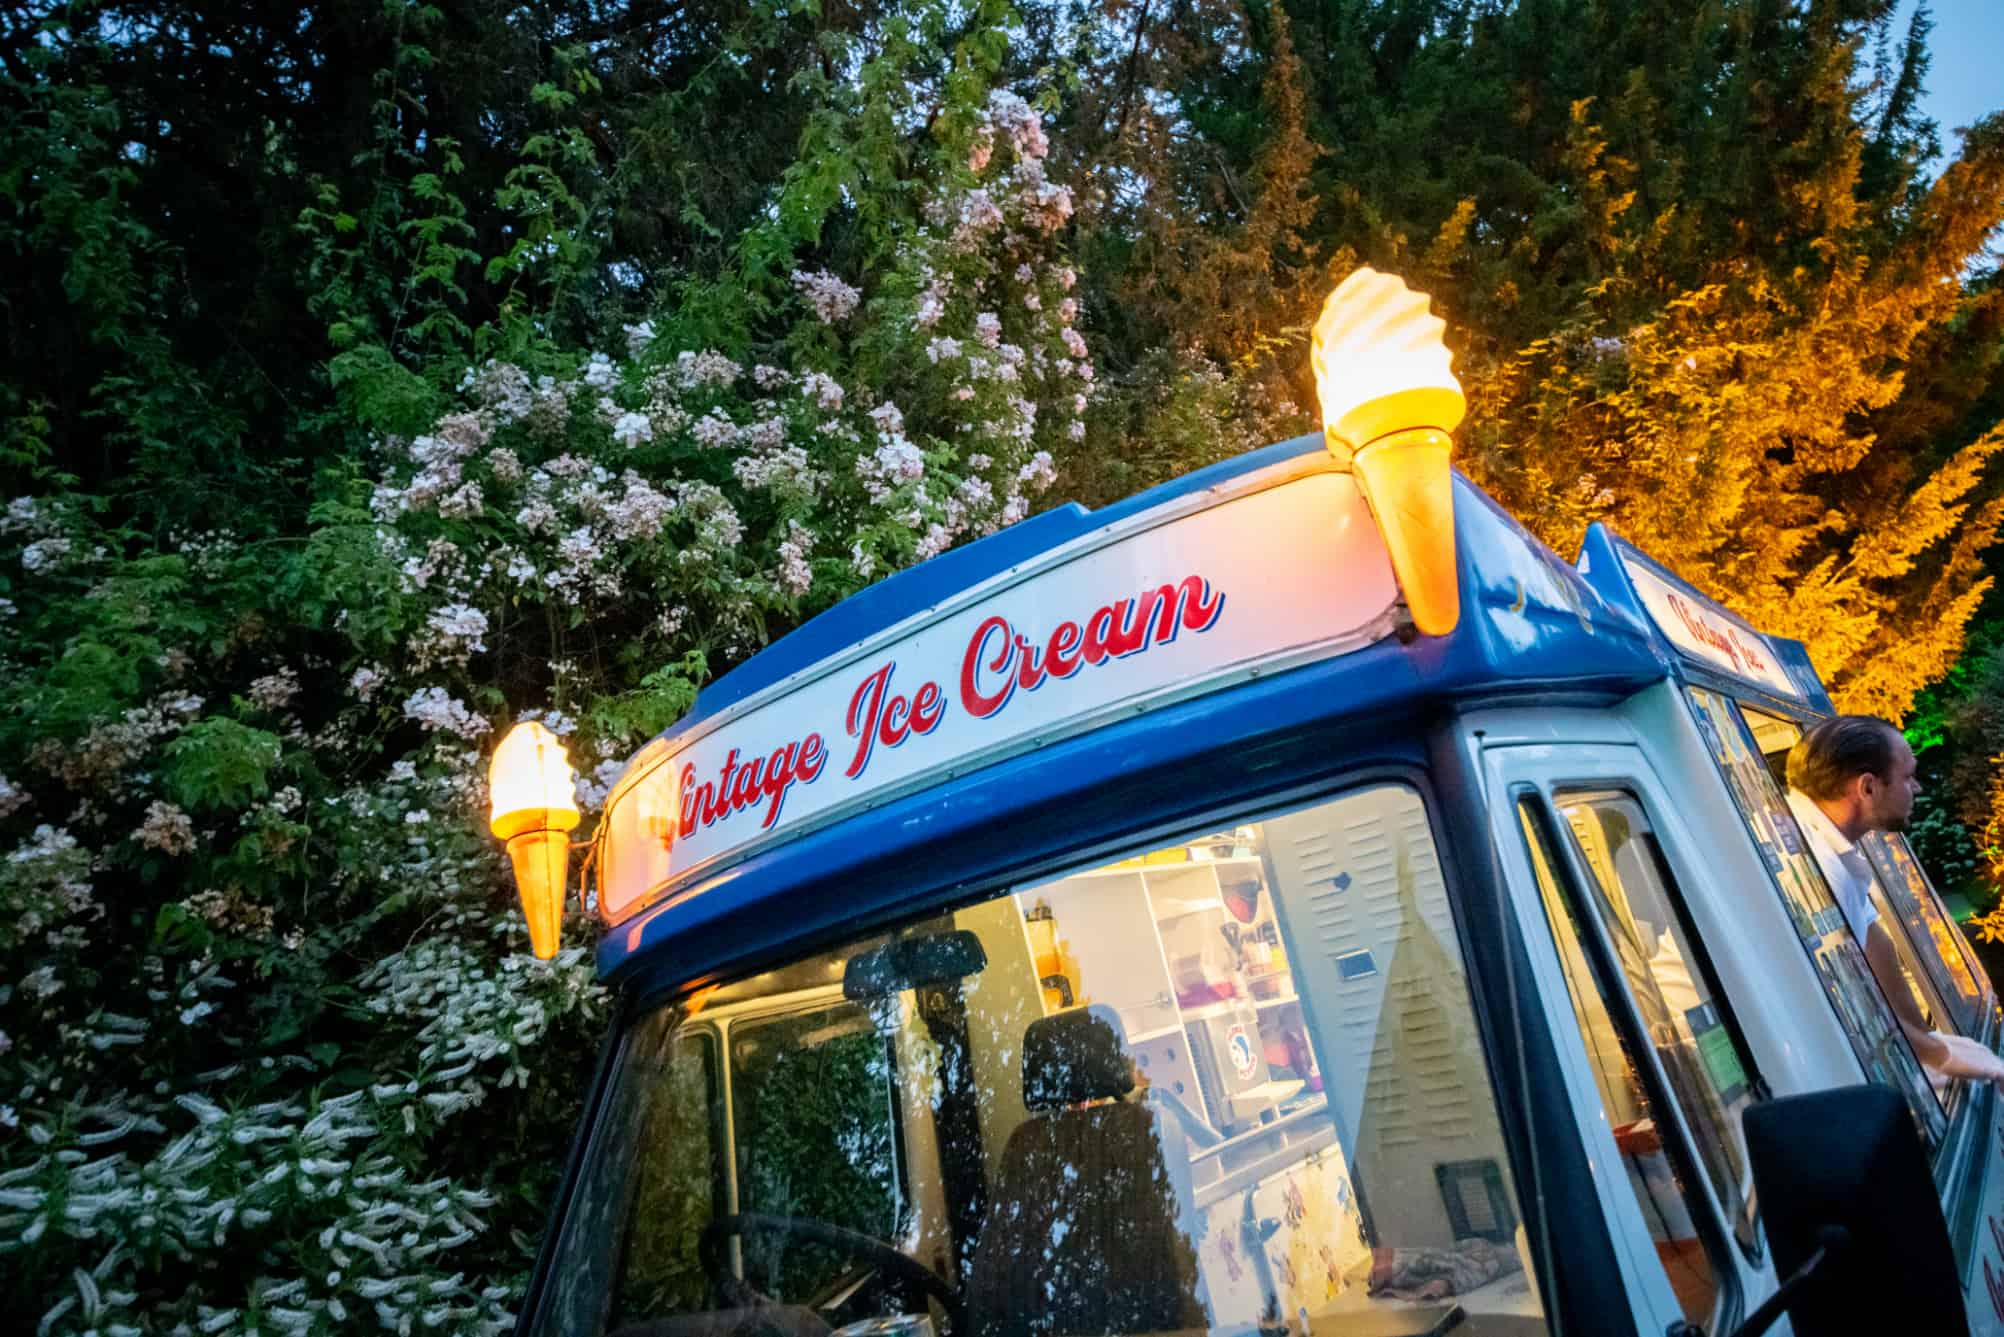 Vintage ice cream van